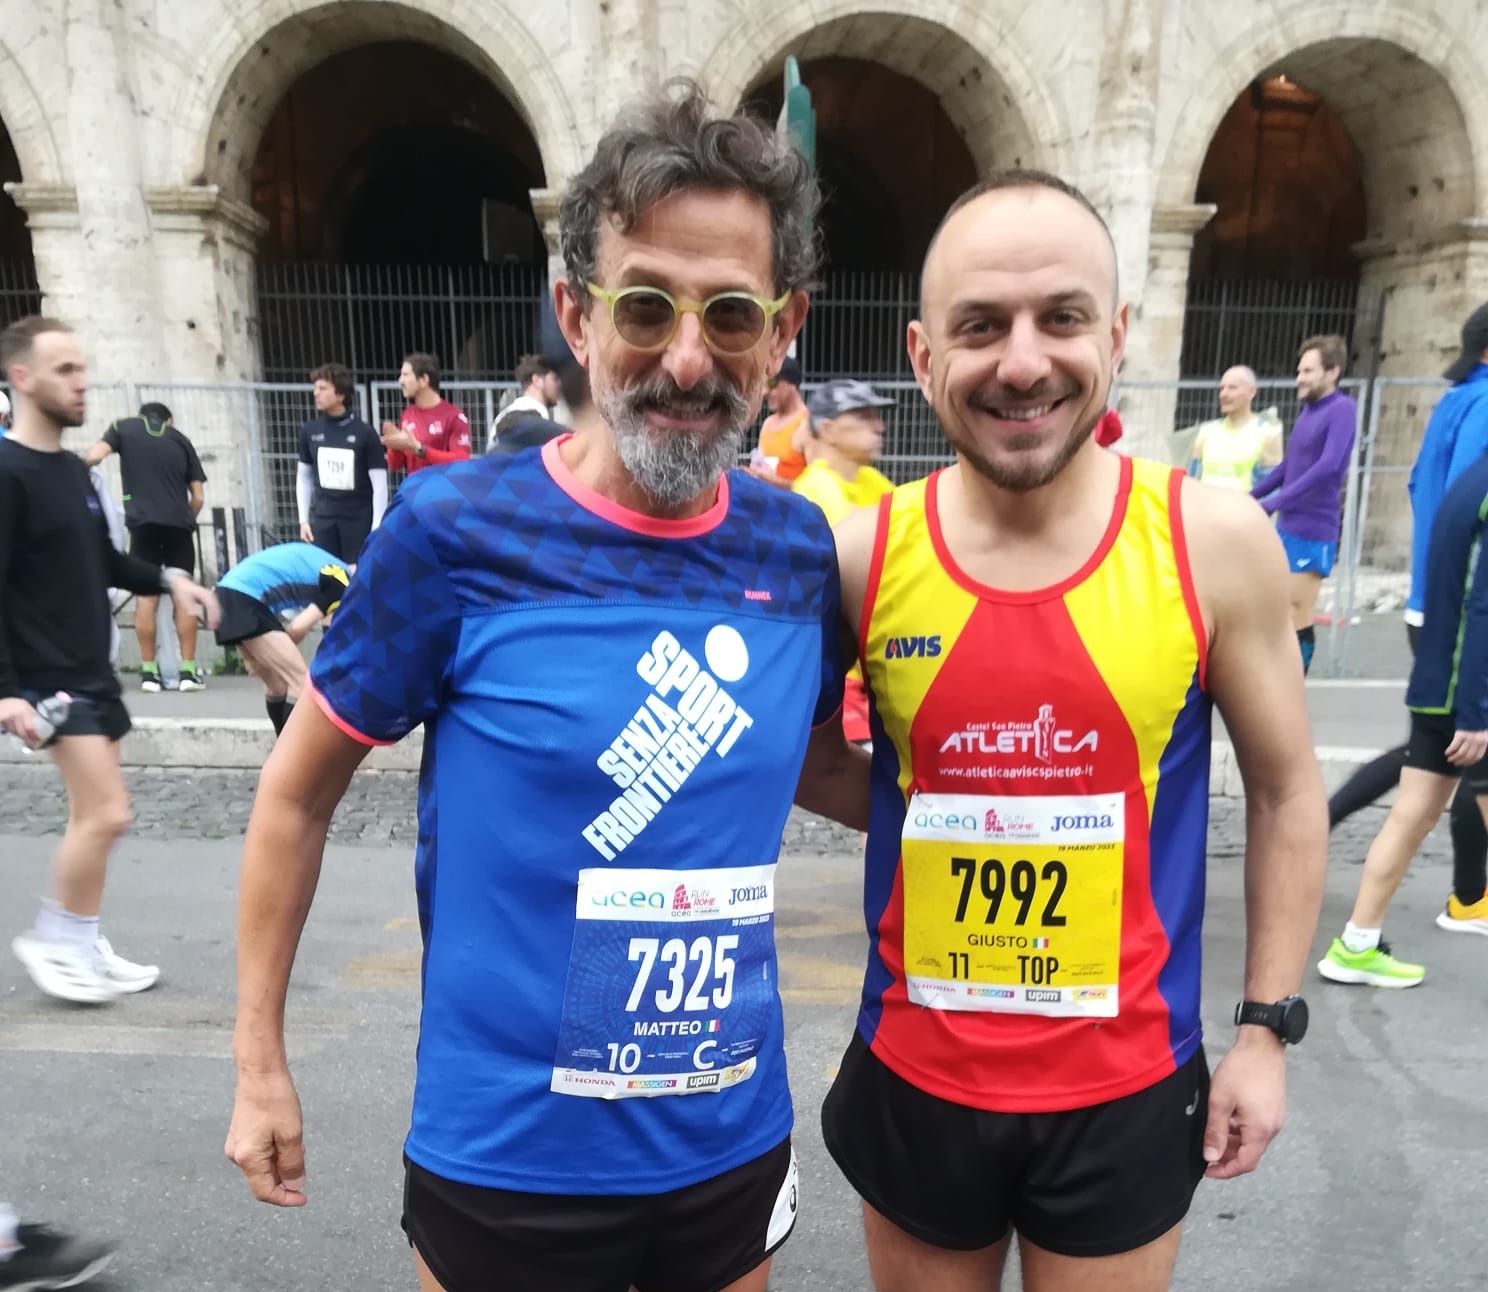 La maratona un grande viaggio - di Matteo Simone